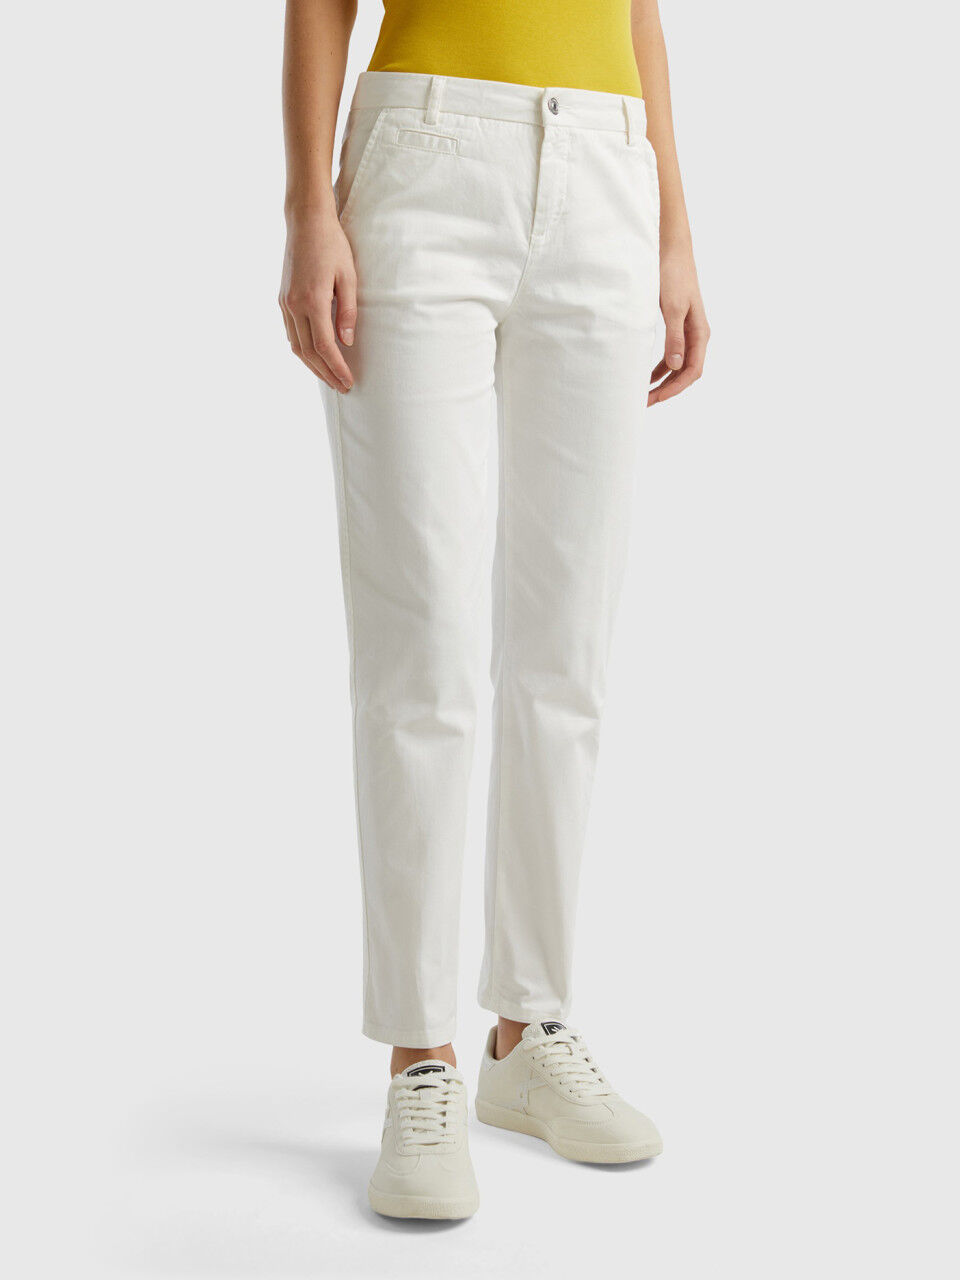 Bandito White Slim Fit Selvedge Jeans - Barbanera